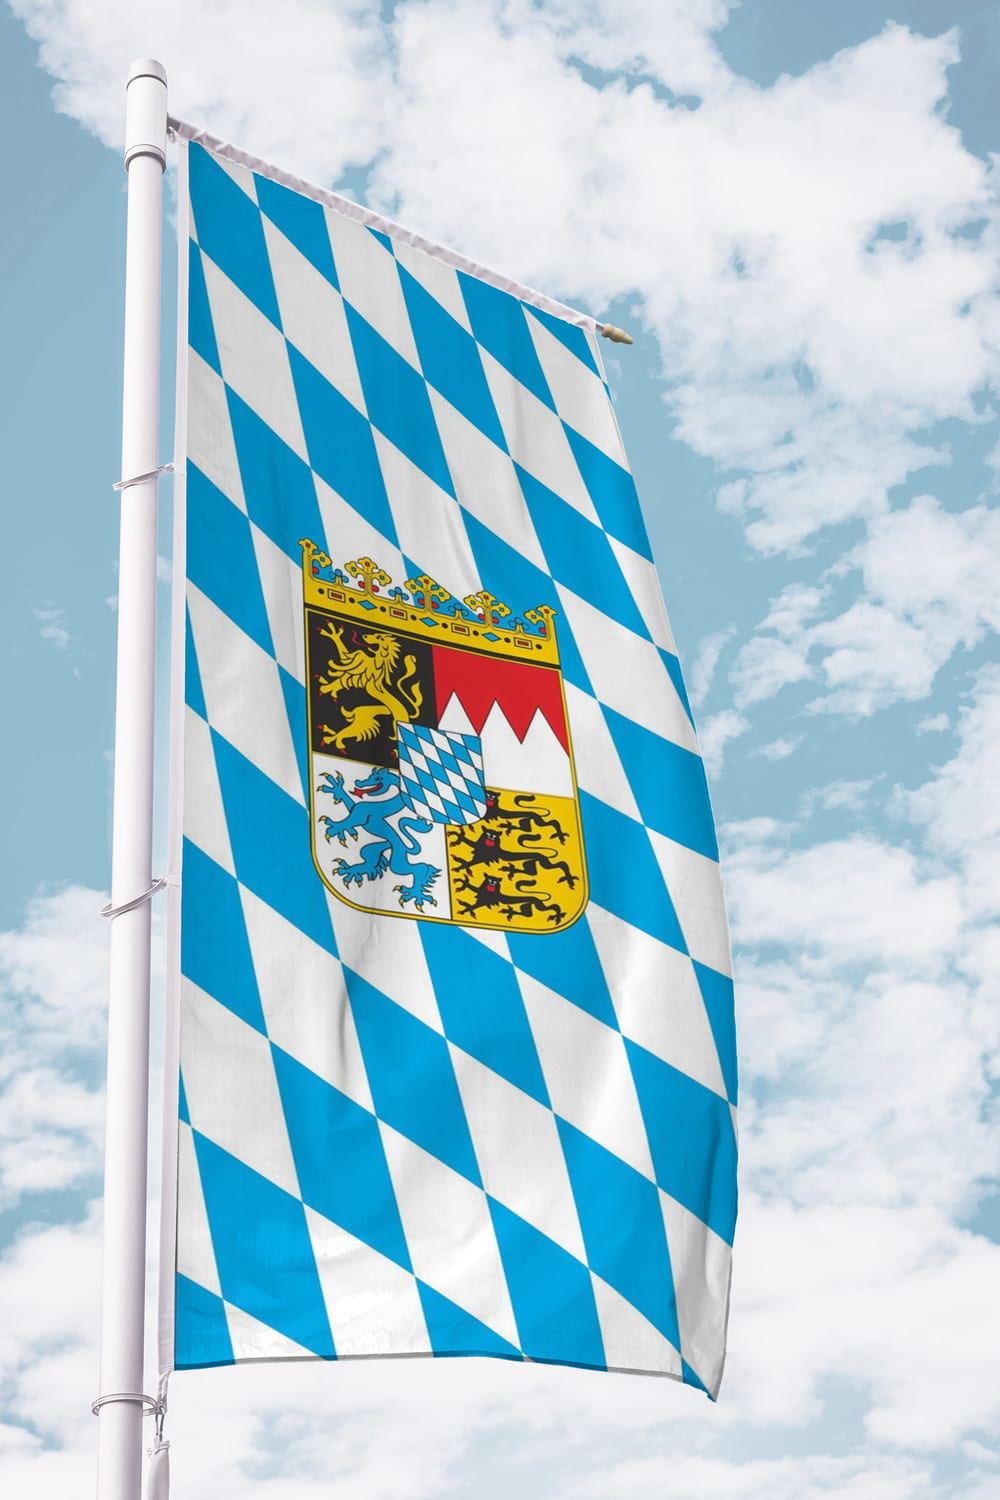 Bayern mit Wappen Hochformat Flagge - 80 x 200 cm - MaxFlags 